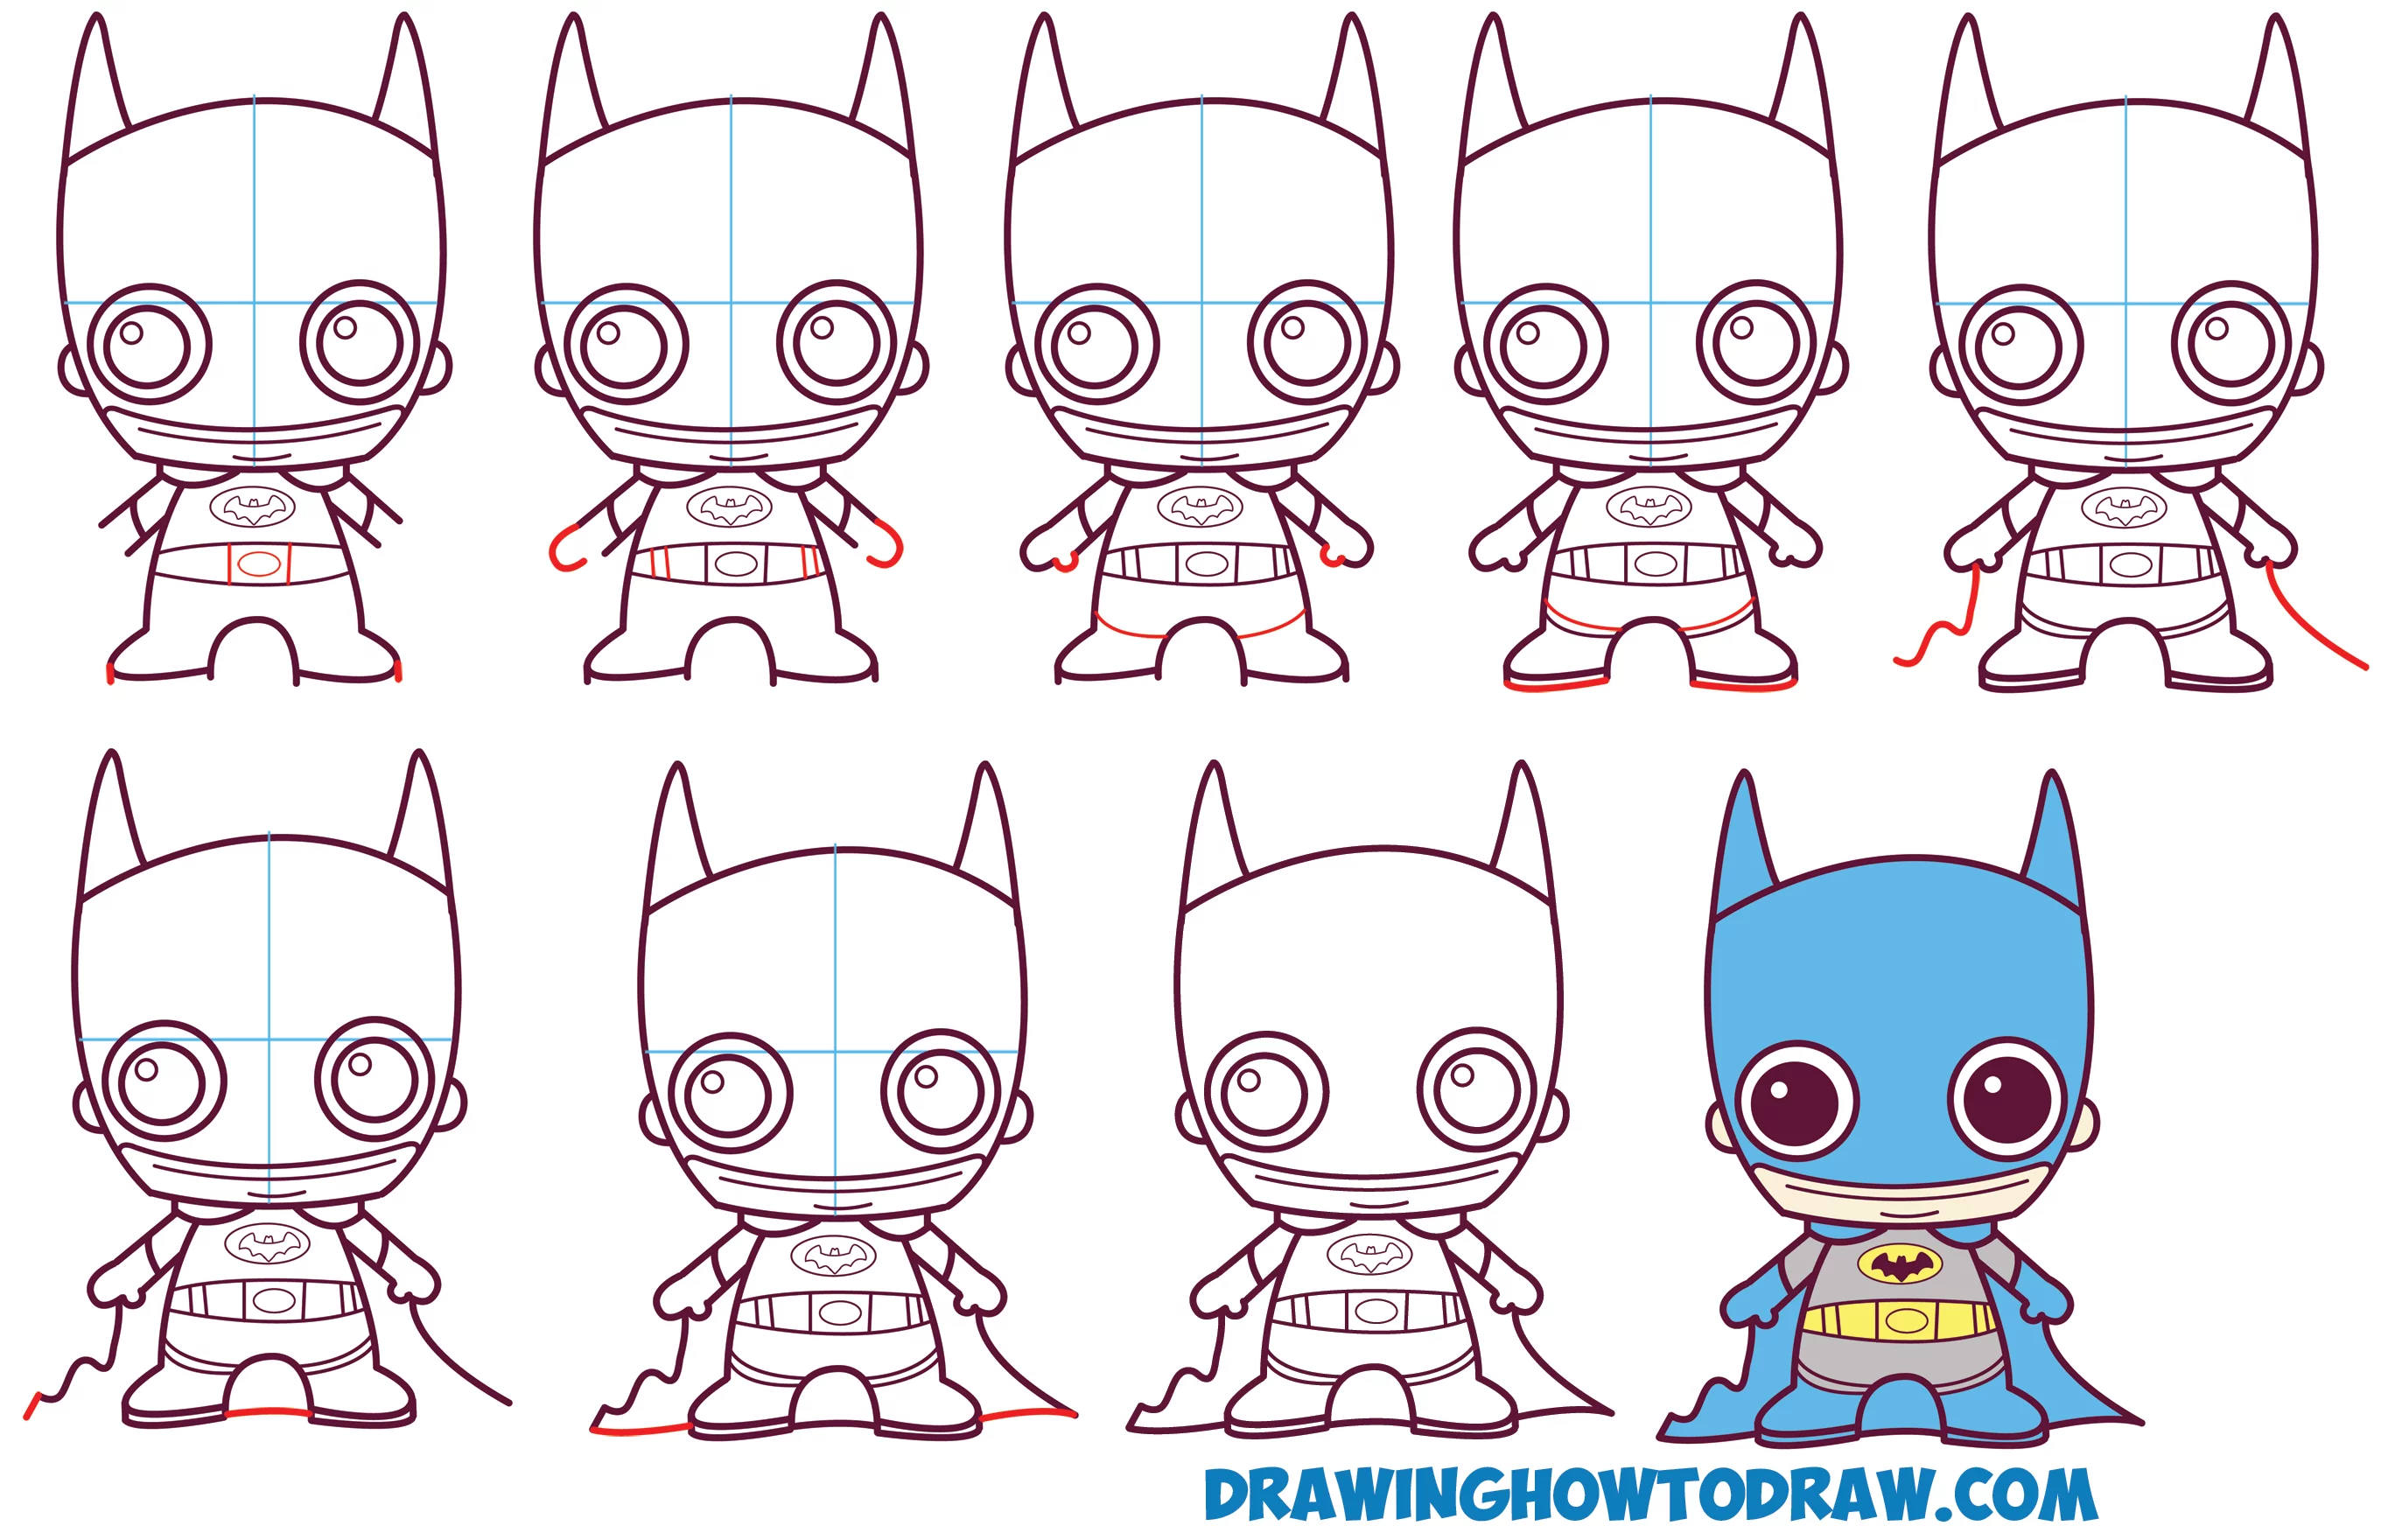 Naucz się rysować słodkie / dziecko / Kawaii / Chibi Batman z komiksów DC w prostych krokach Lekcja Rysowania Dla Dzieci